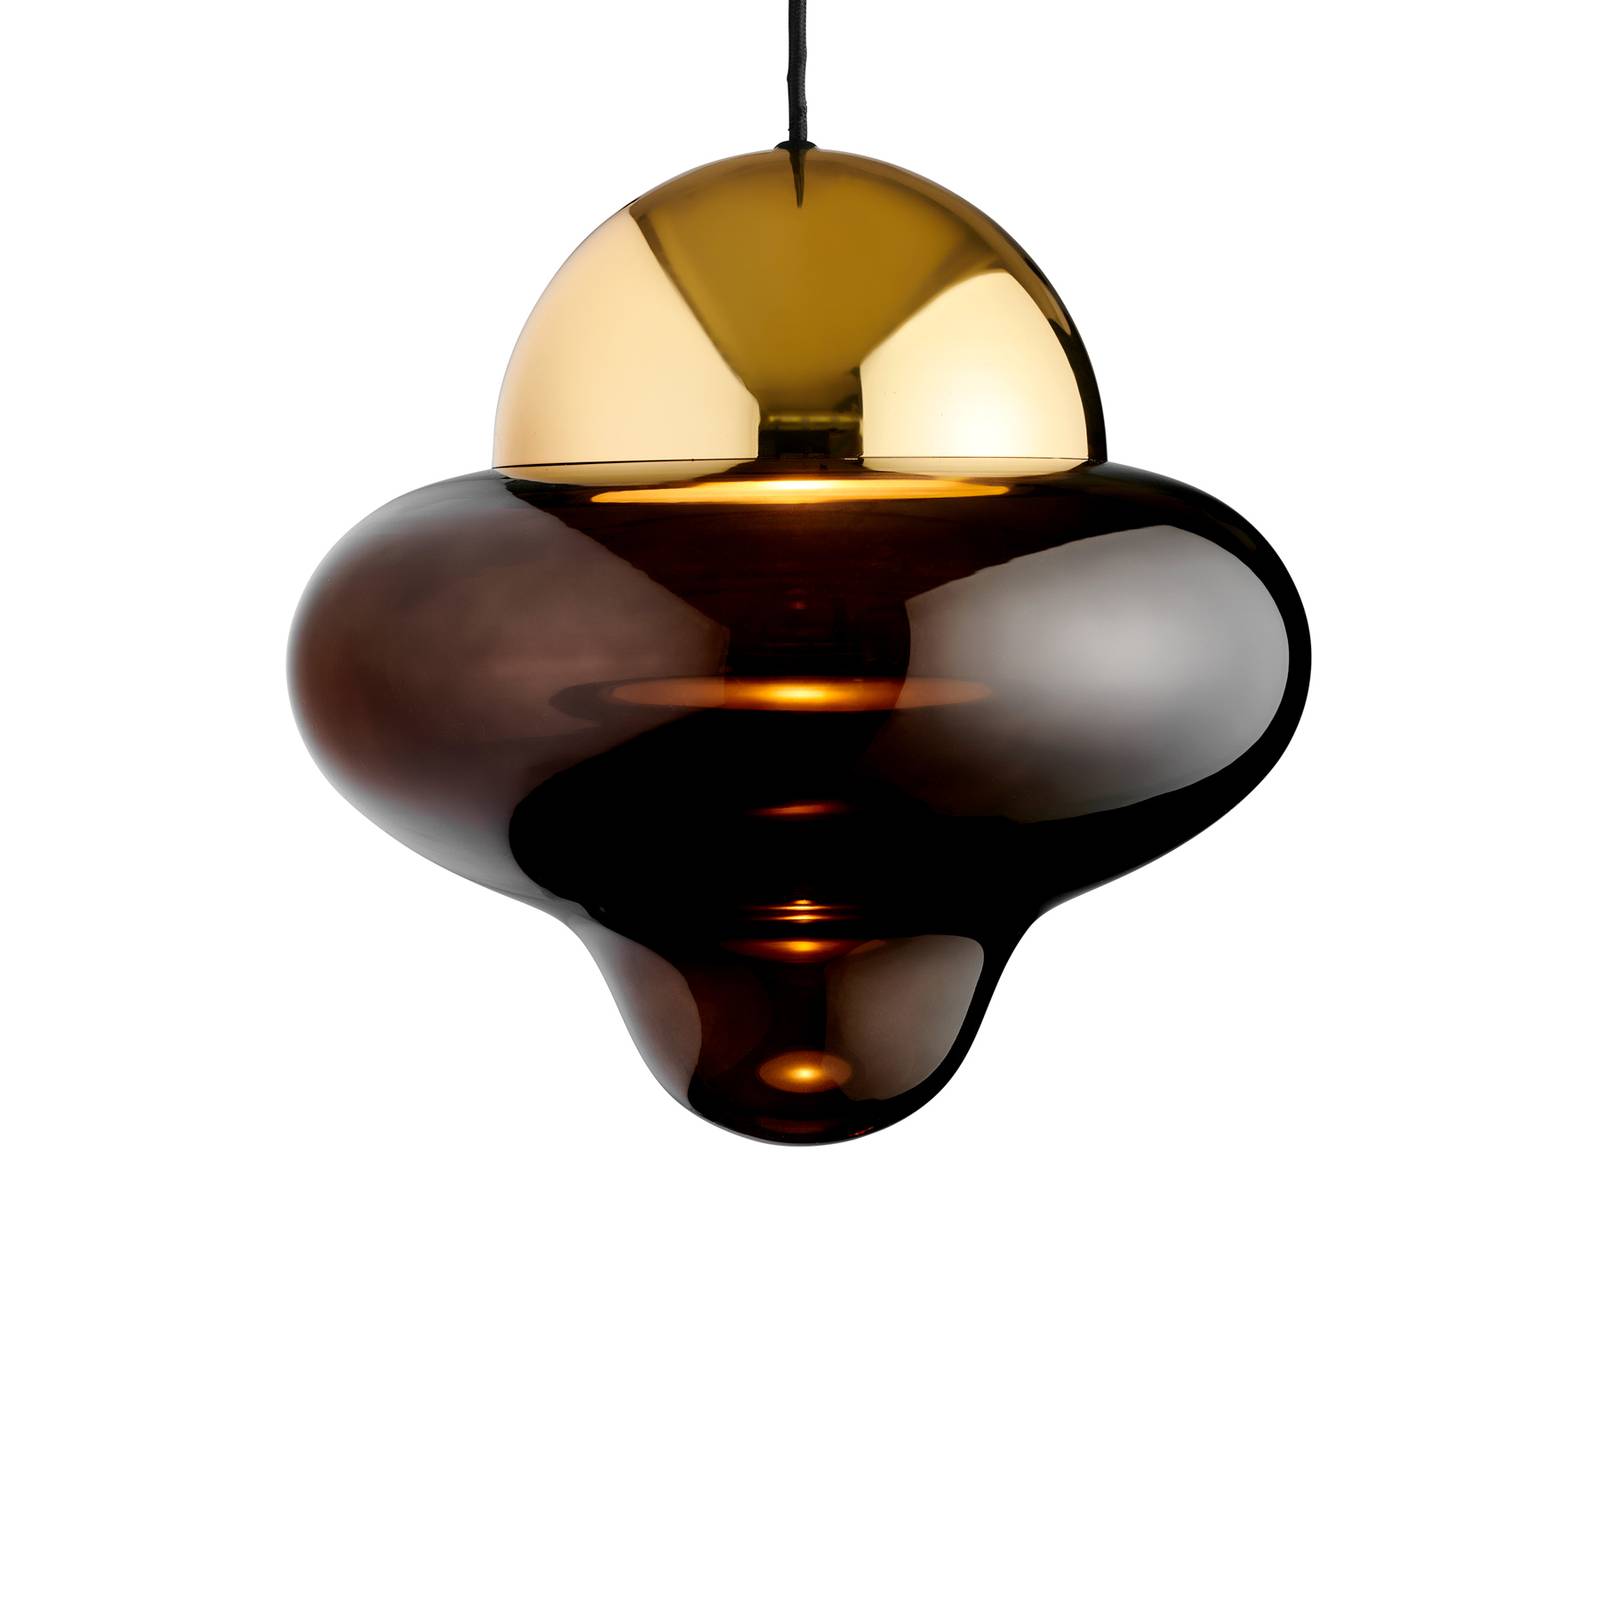 LED-Hängeleuchte Nutty XL, braun / goldfarben, Ø 30 cm, Glas von DESIGN BY US